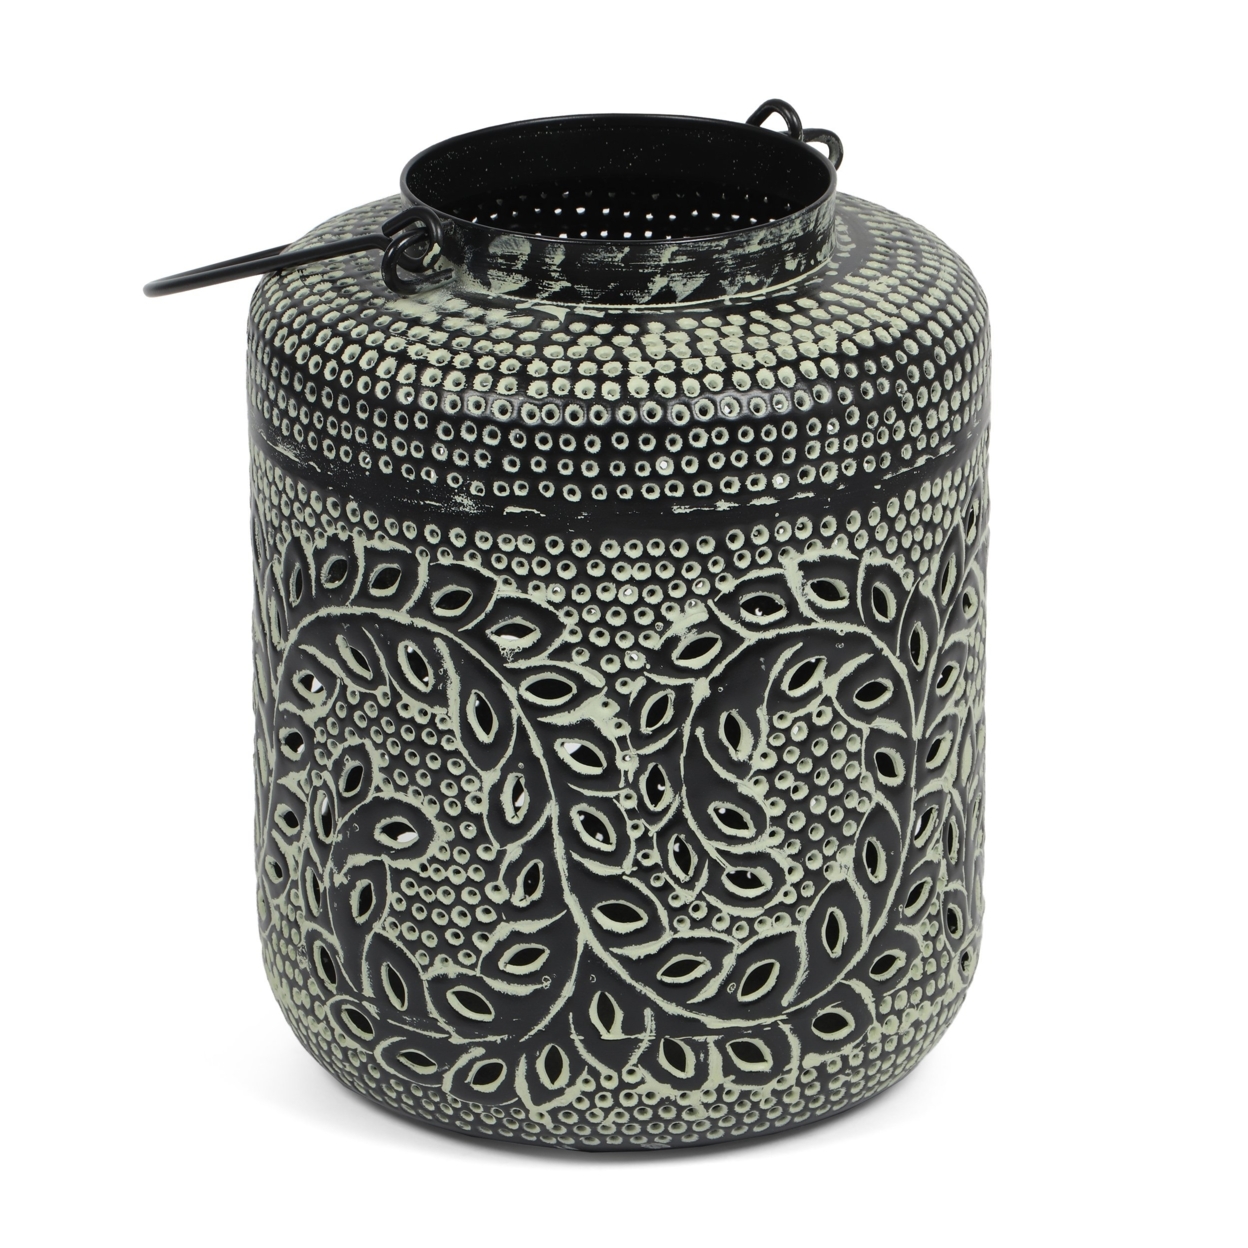 Reitz Boho Handcrafted Decorative Lantern - Large